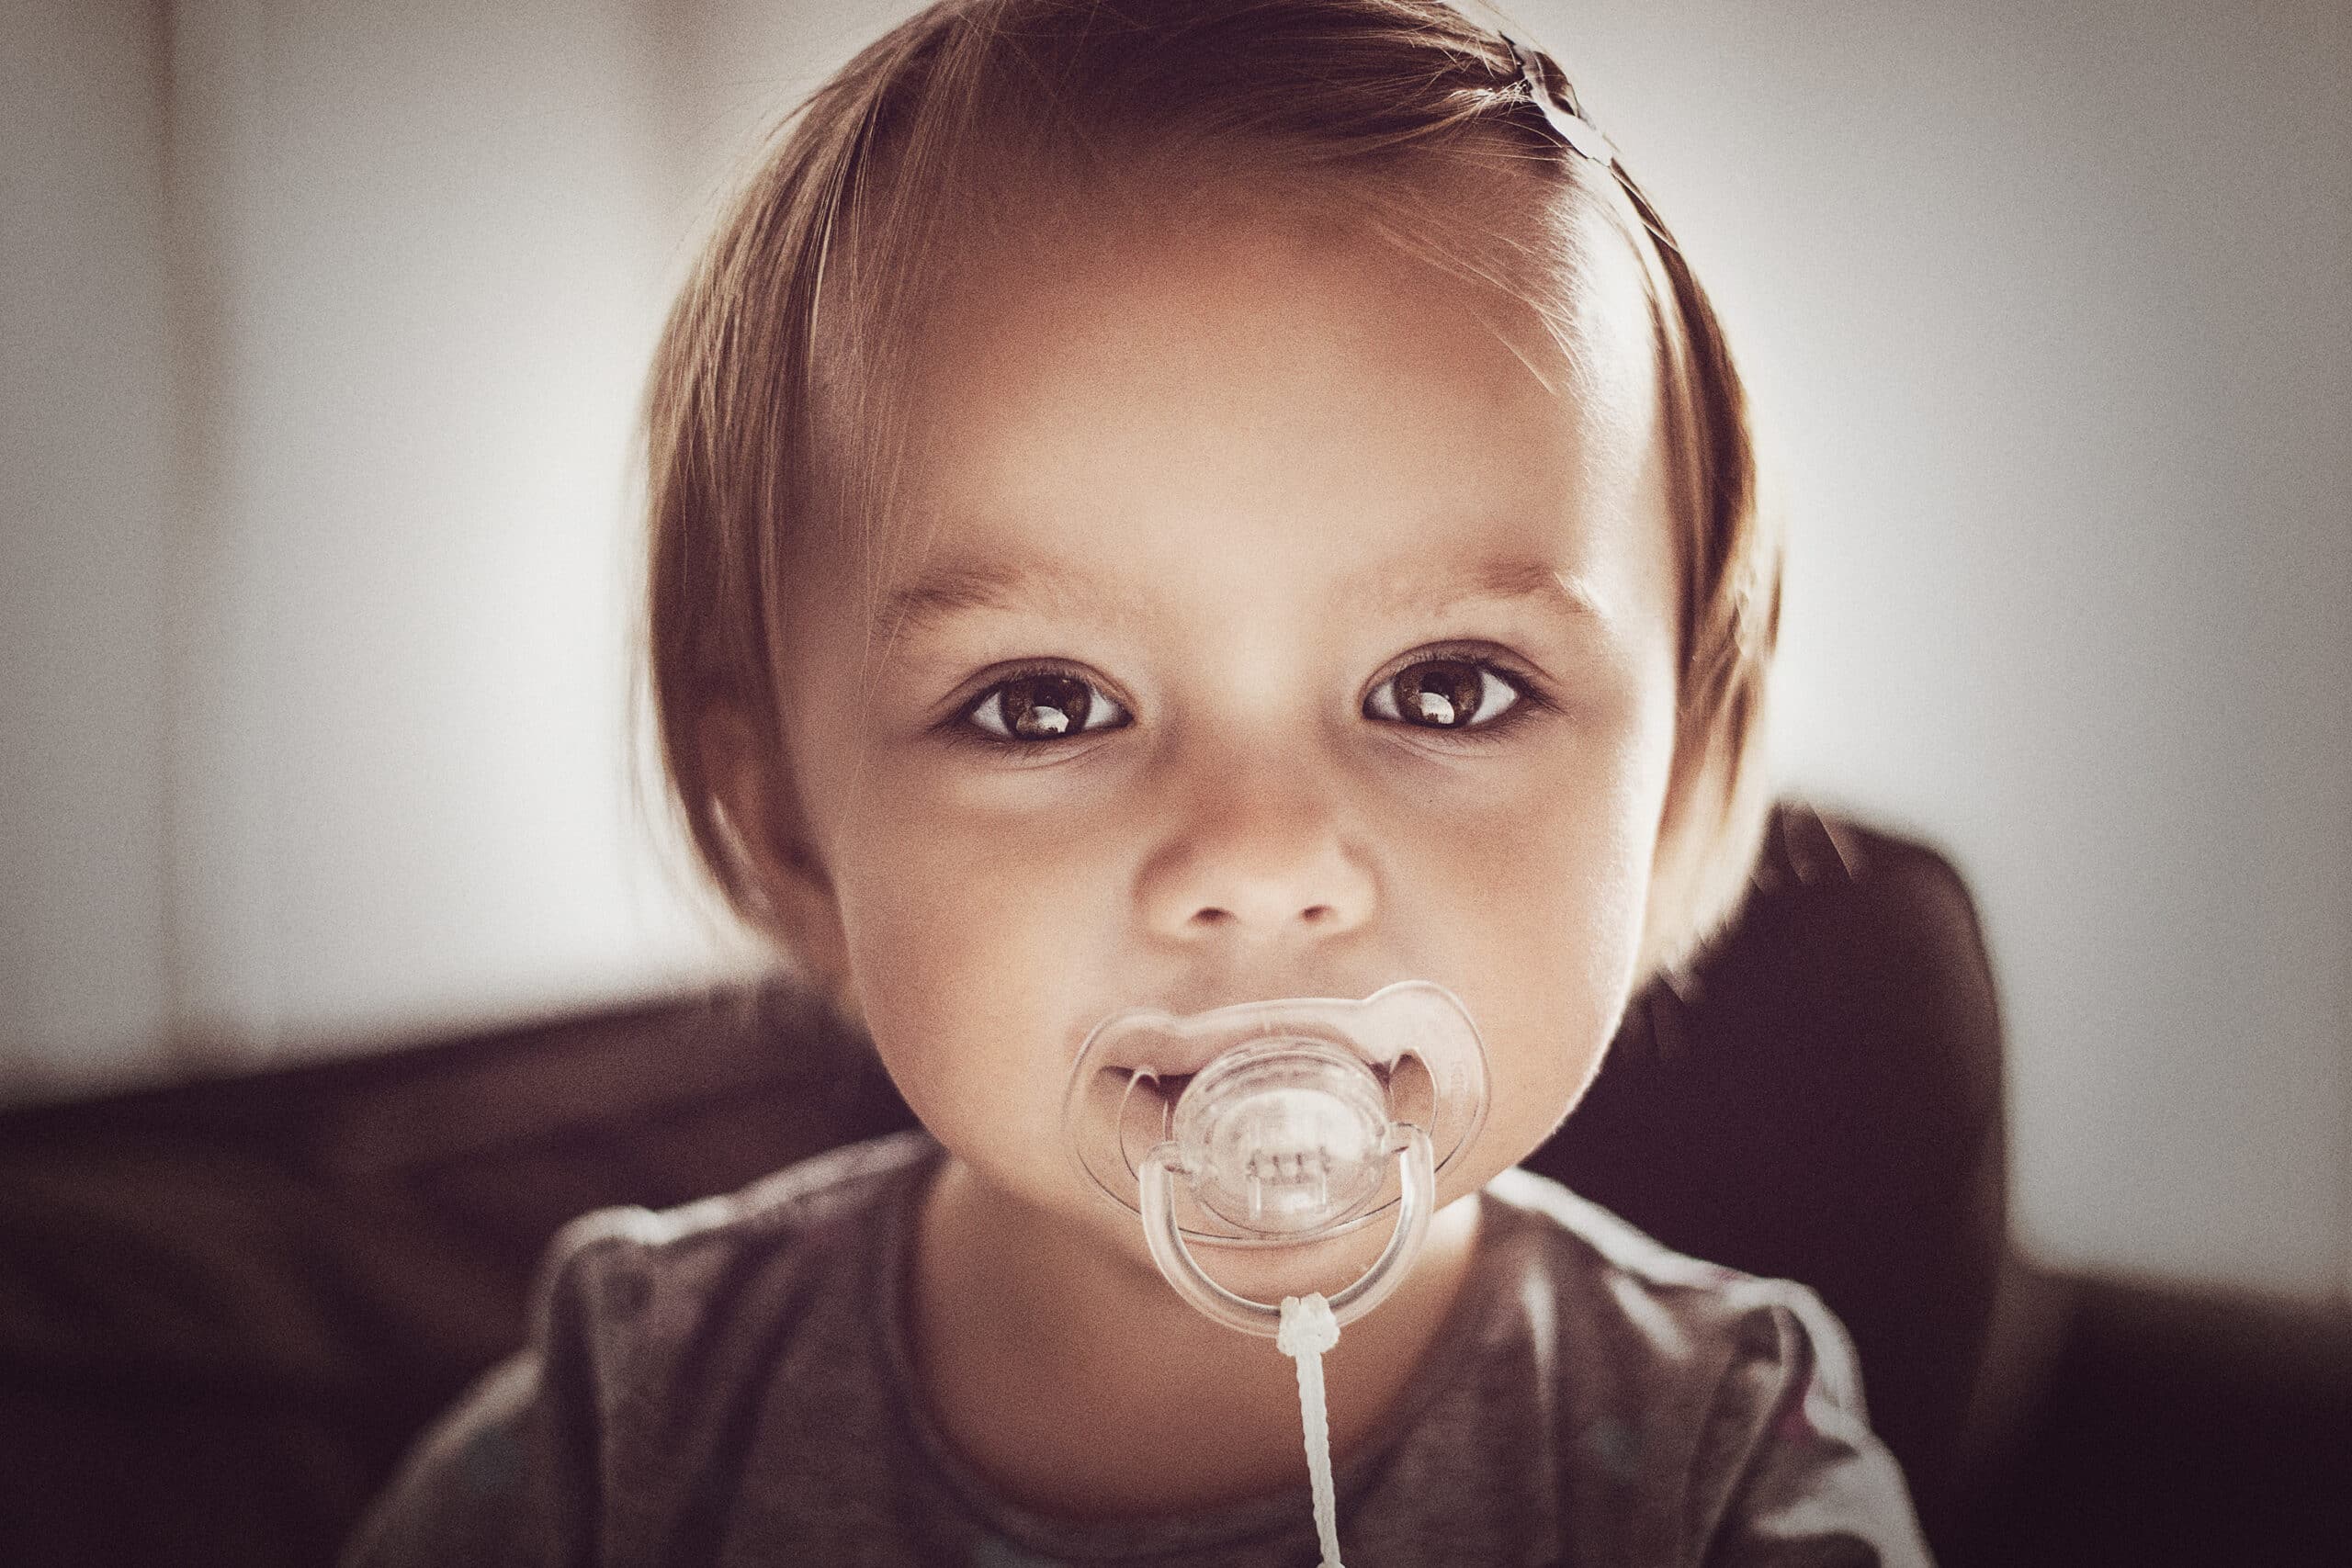 Next Image - kinder-baby-fotograf-lukaslehmann-oldenburg-e20150501-01